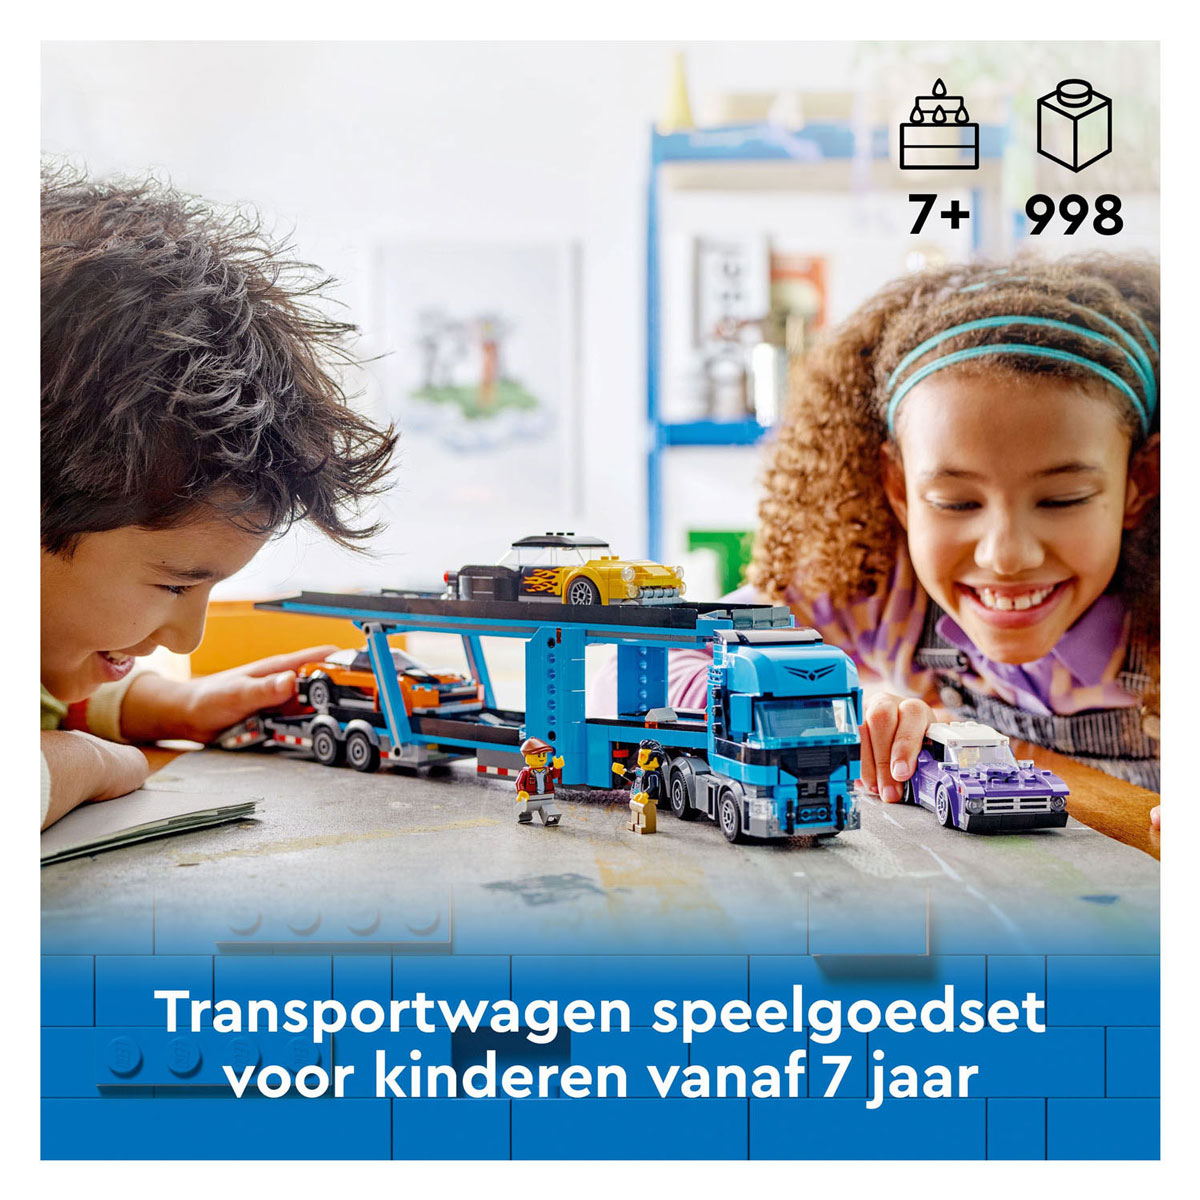 LEGO City 60408 Transportfahrzeug mit Sportwagen